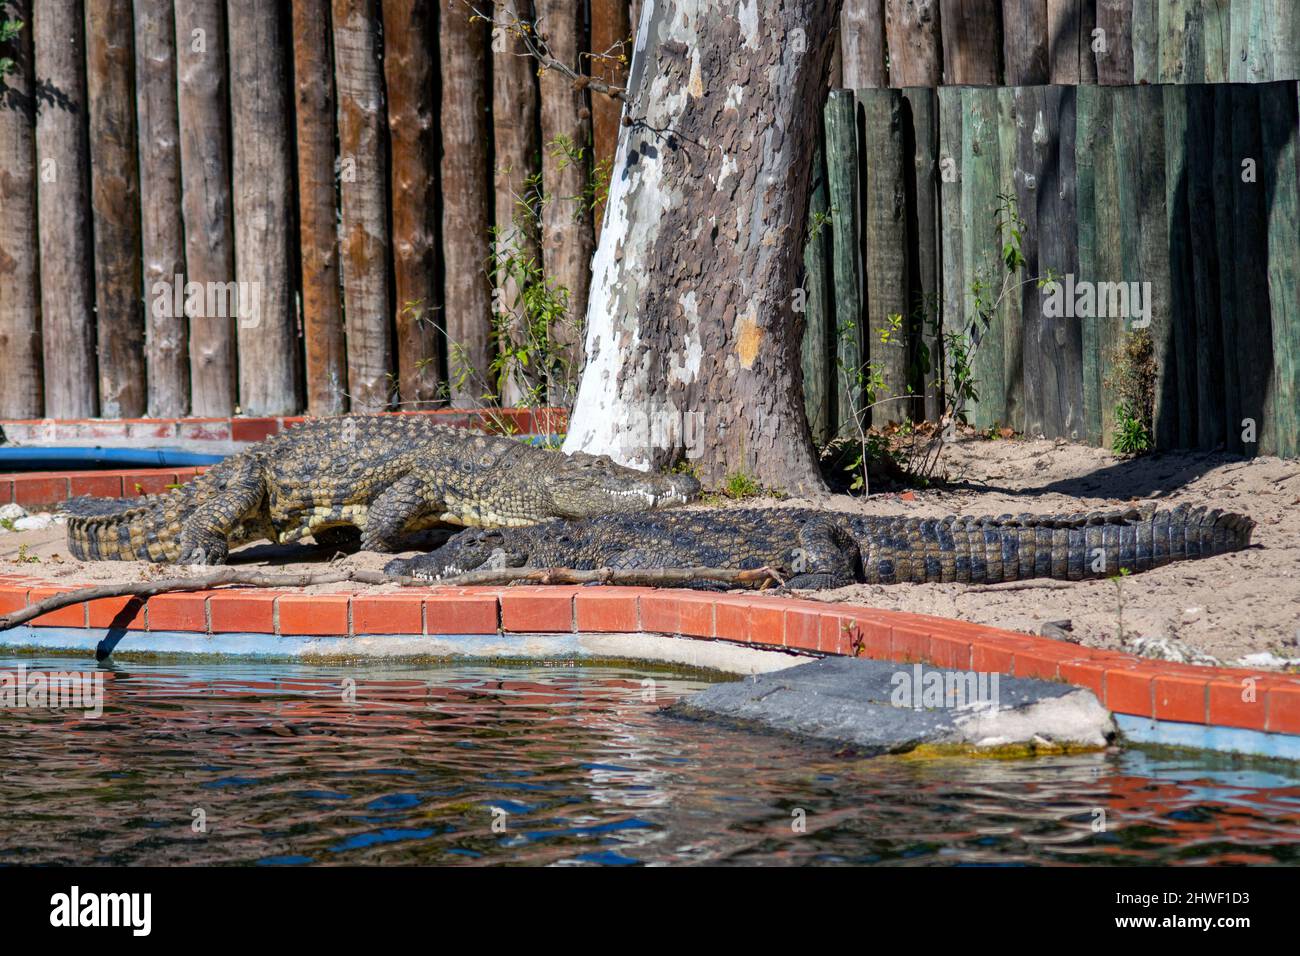 Zwei große Krokodile.das Nilkrokodil ist ein großer Krokodil, der in Süßwasser-Lebensräumen in Afrika beheimatet ist. Zoo von Lissabon. Stockfoto